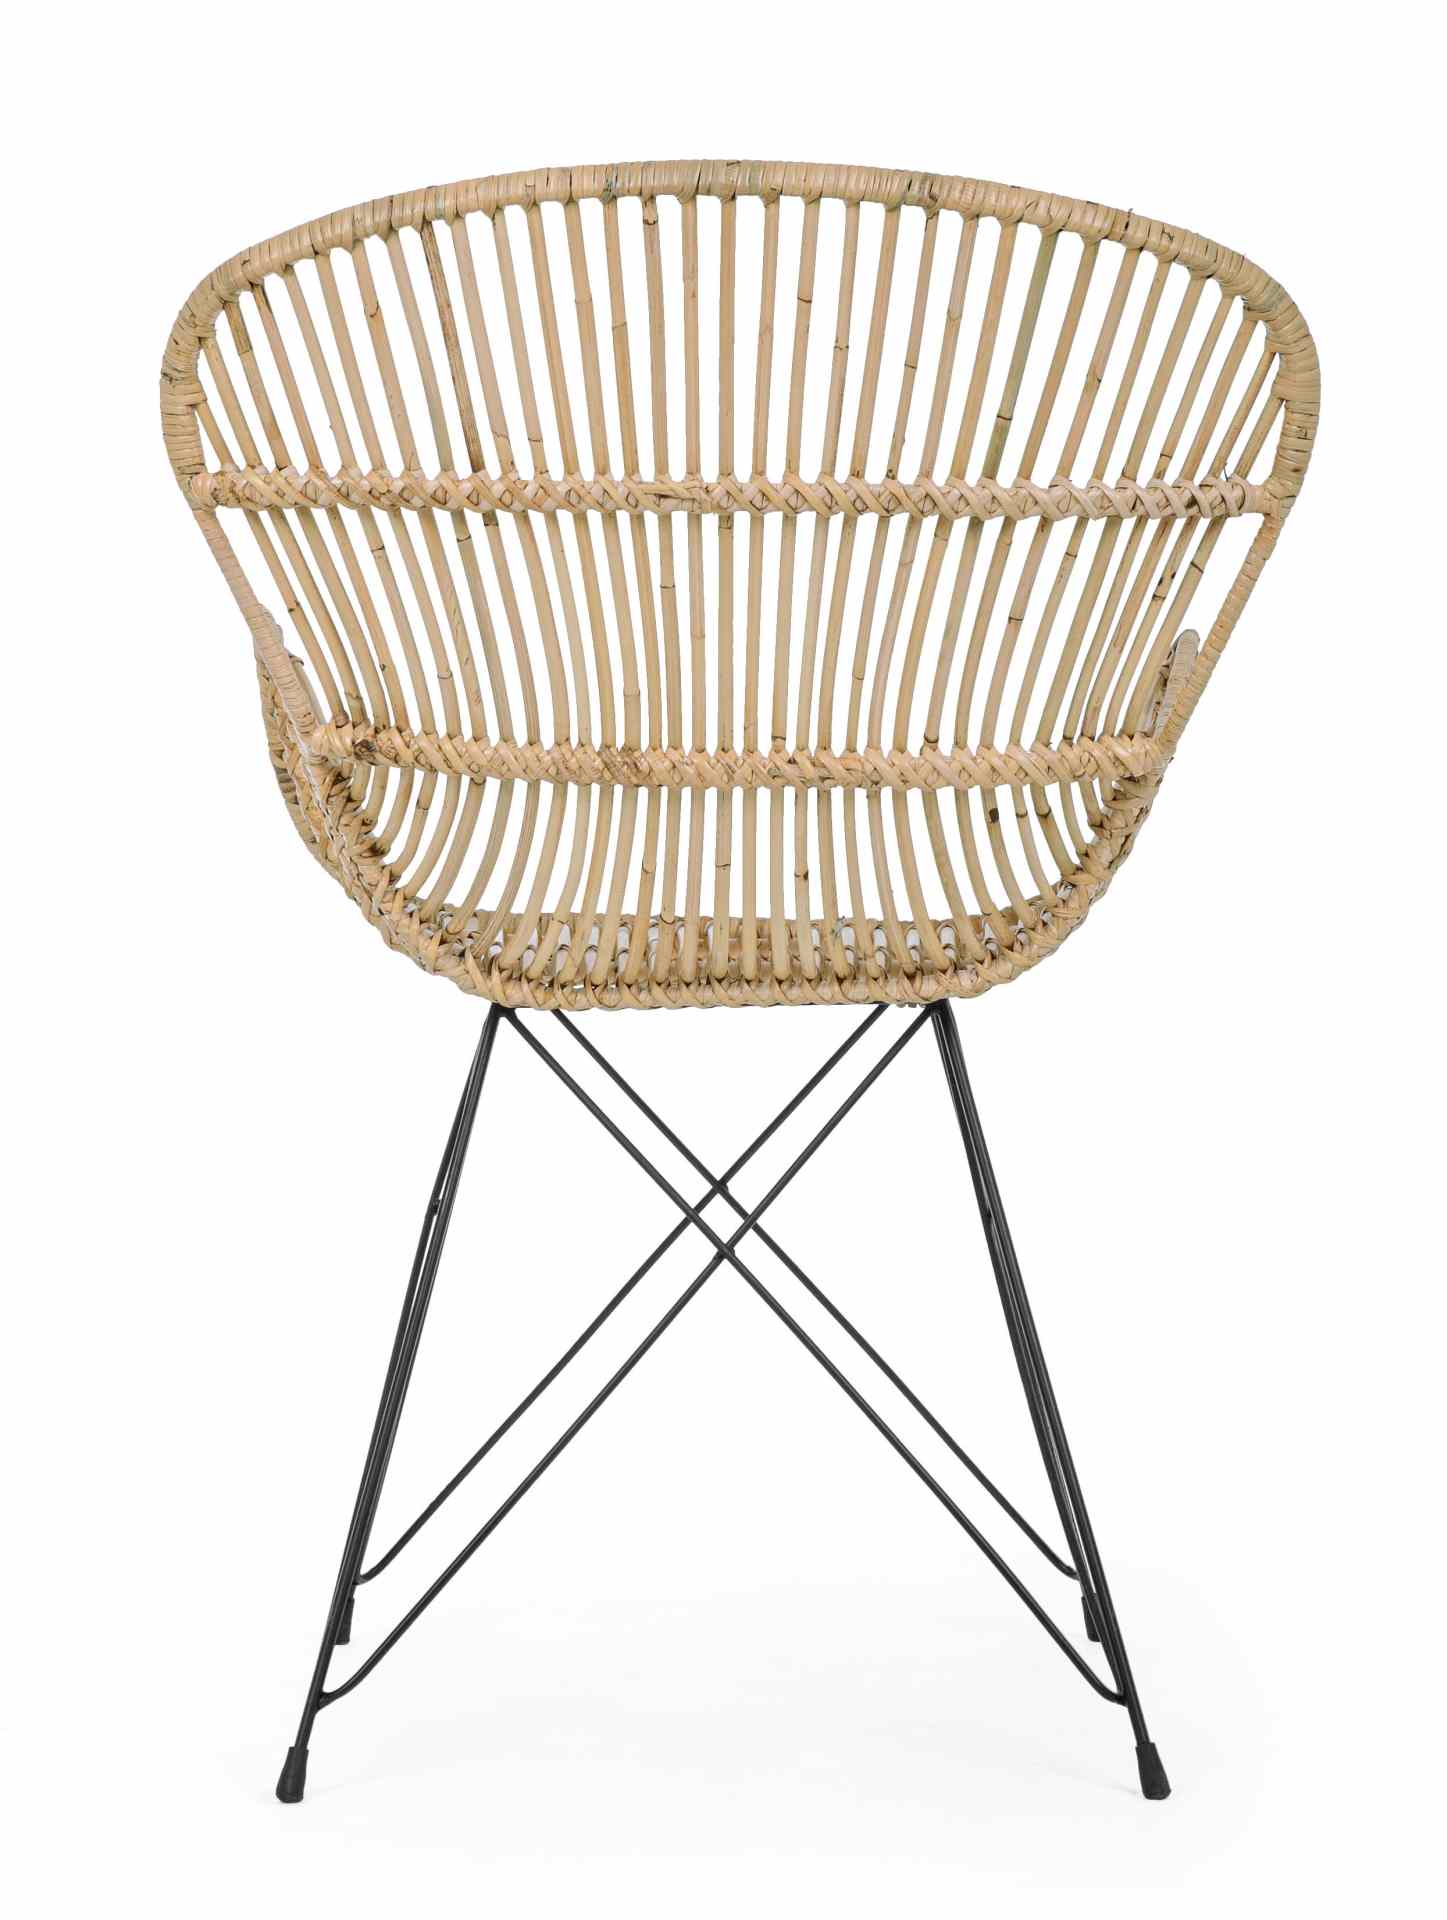 Der Sessel Venturs überzeugt mit seinem klassischen Design. Gefertigt wurde er aus Rattan, welches einen natürlichen Farbton besitzt. Das Gestell ist aus Metall und hat eine schwarze Farbe. Der Sessel besitzt eine Sitzhöhe von 46 cm. Die Breite beträgt 62